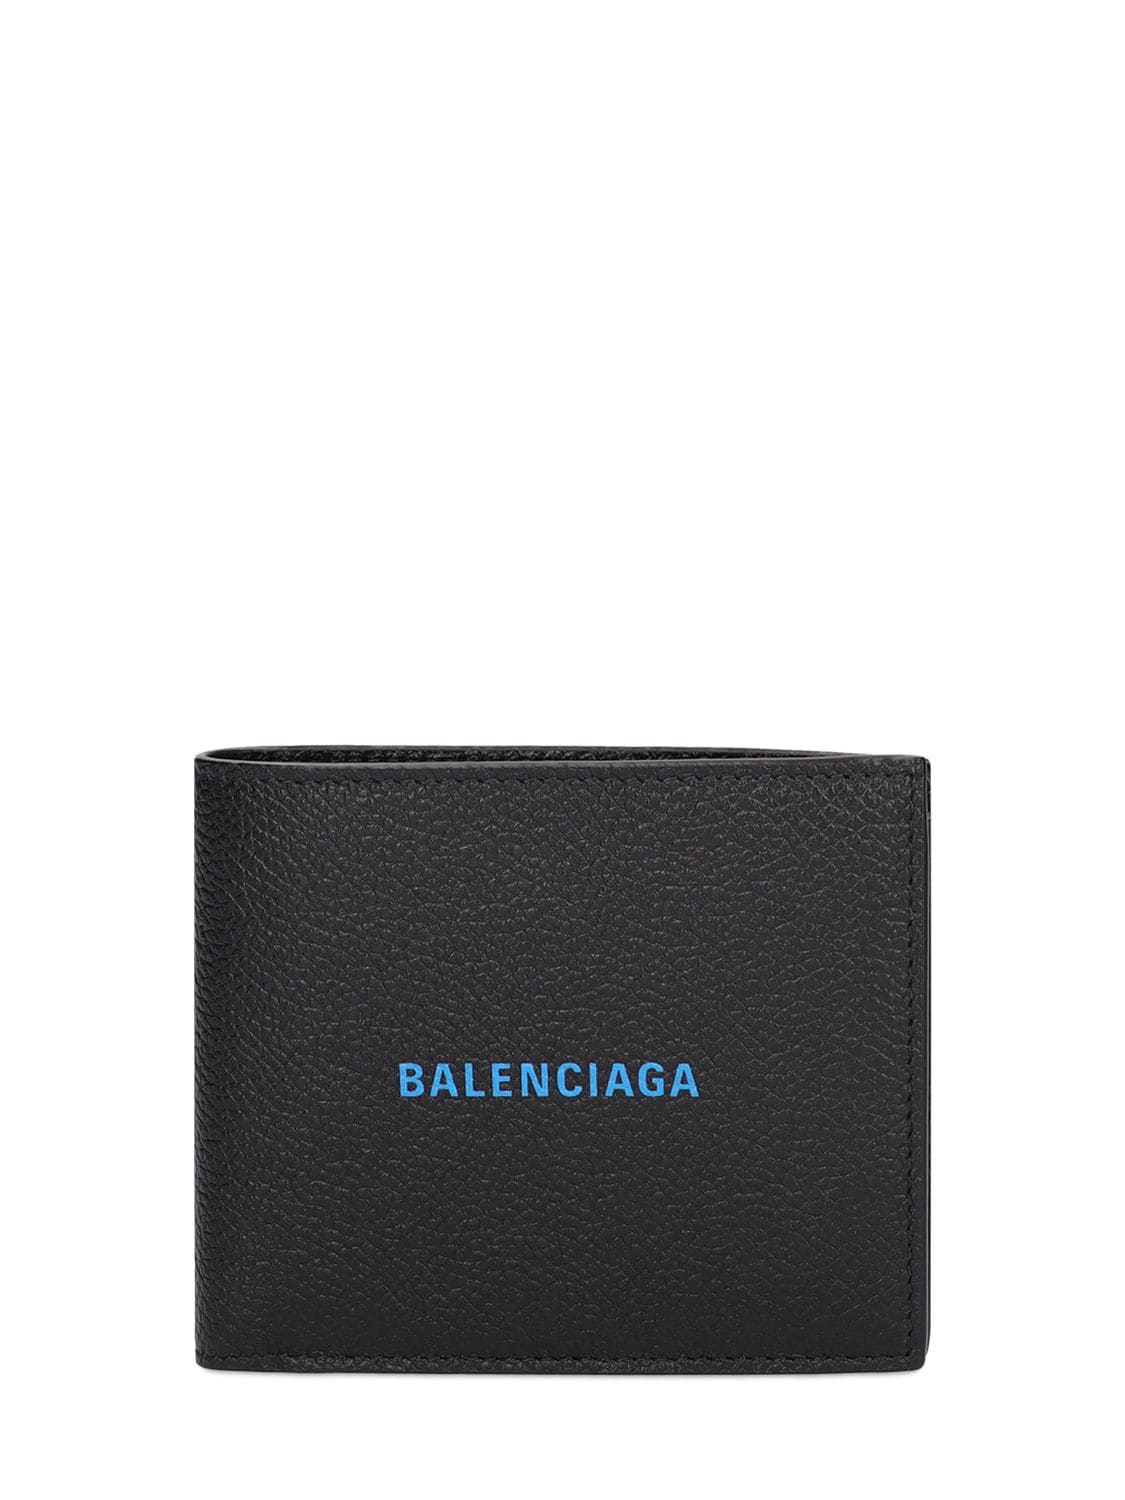 Balenciaga Logo Printed Leather Wallet In Black | ModeSens